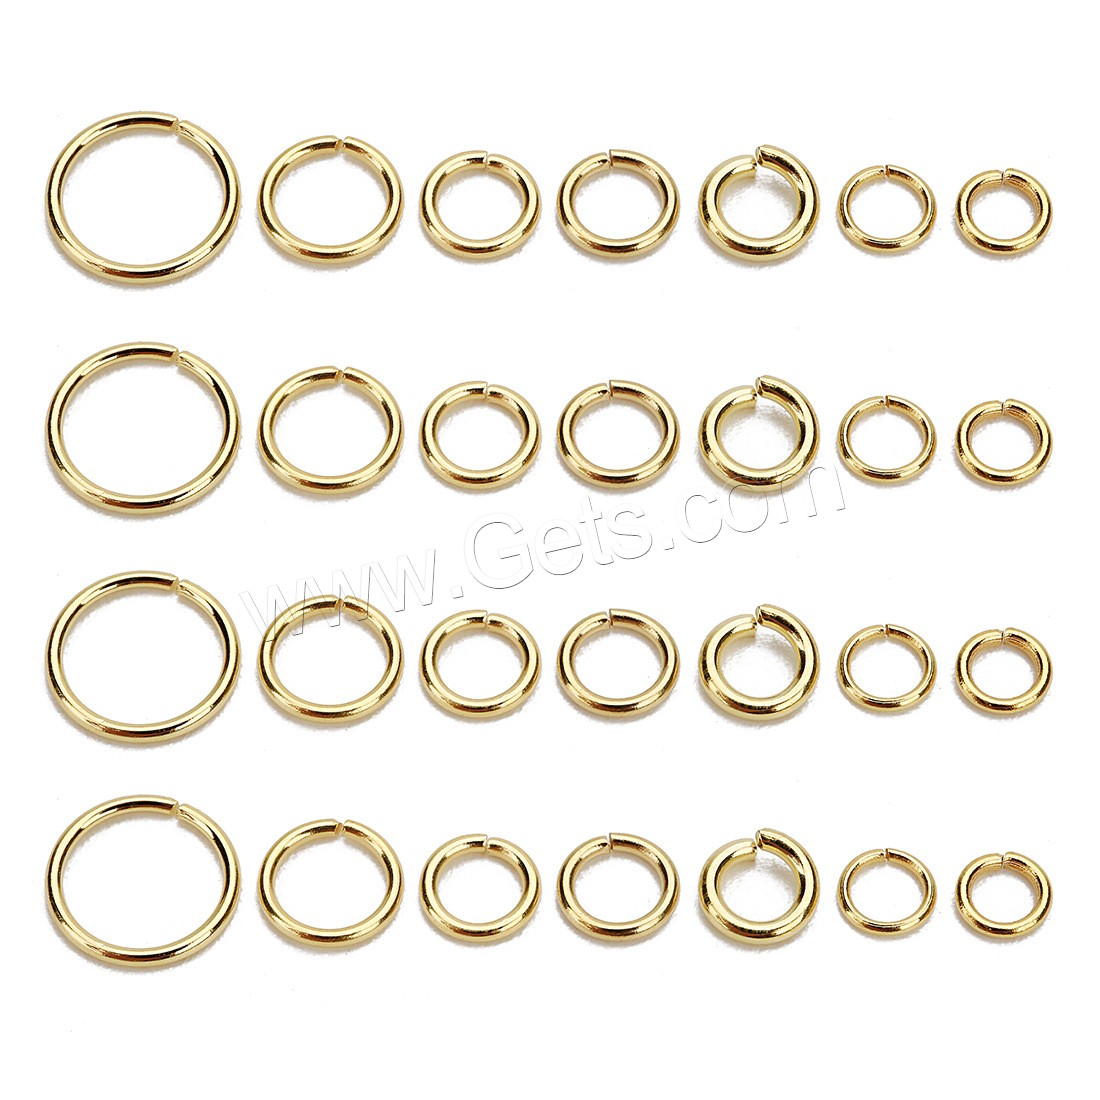 Sägeschnitt Edelstahl Closed Sprung-Ring, verschiedene Größen vorhanden, Goldfarbe, 100PC/Tasche, verkauft von Tasche